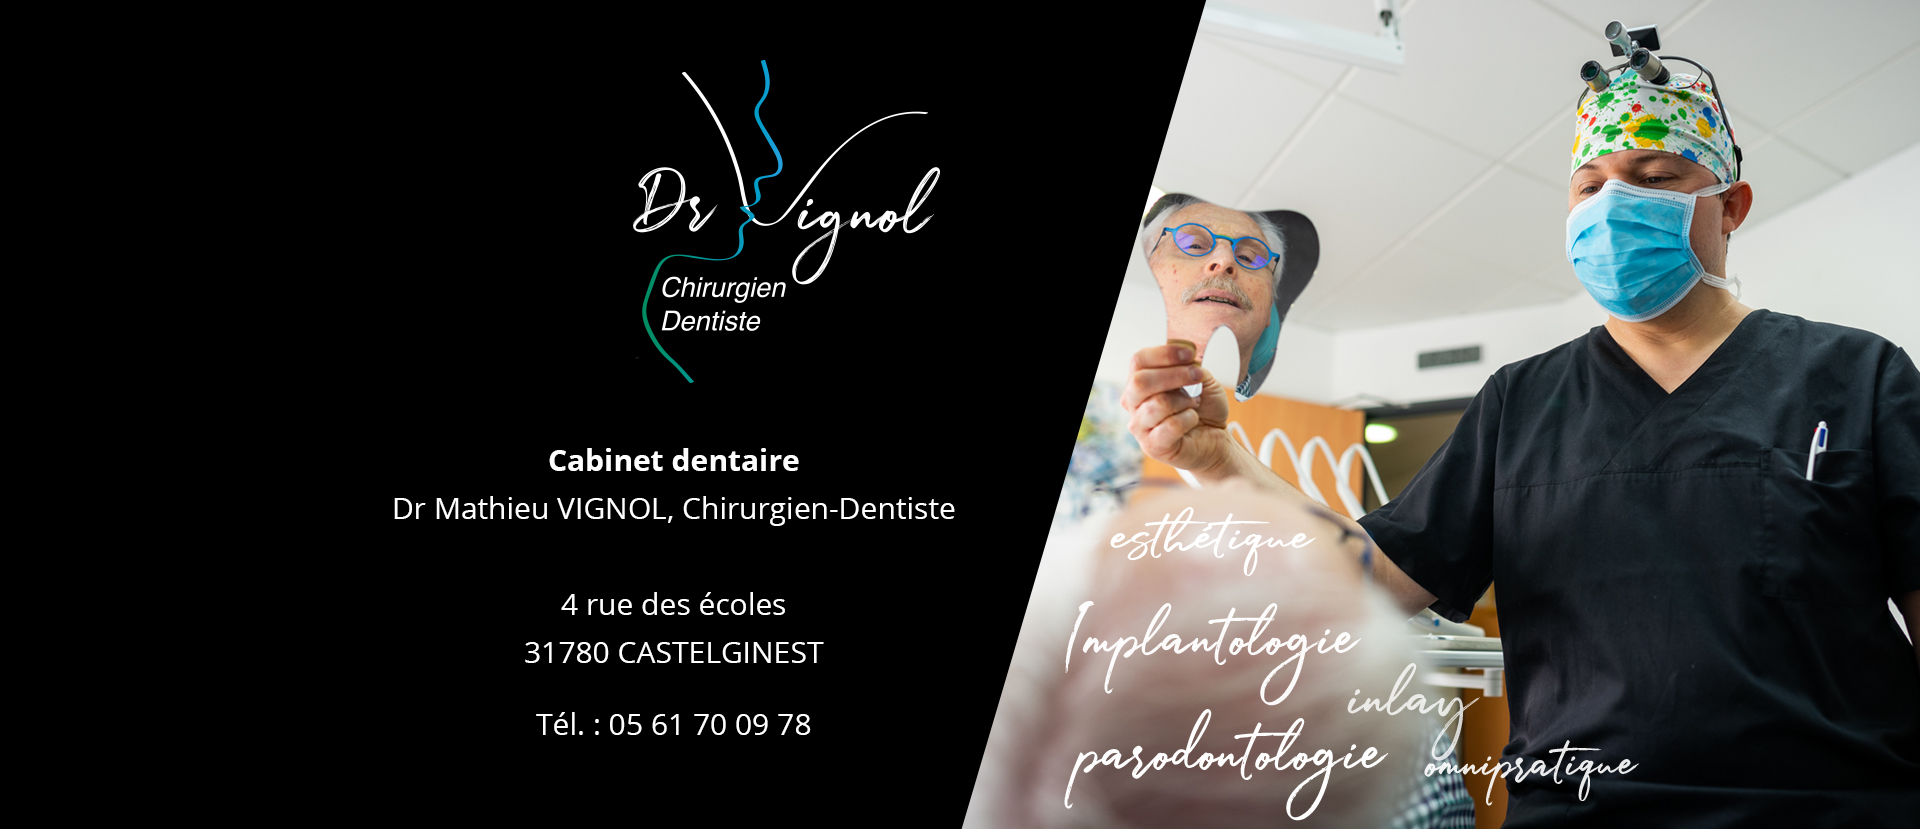 Dr Vignol - Chirurgien Dentiste 05.61.70.09.78